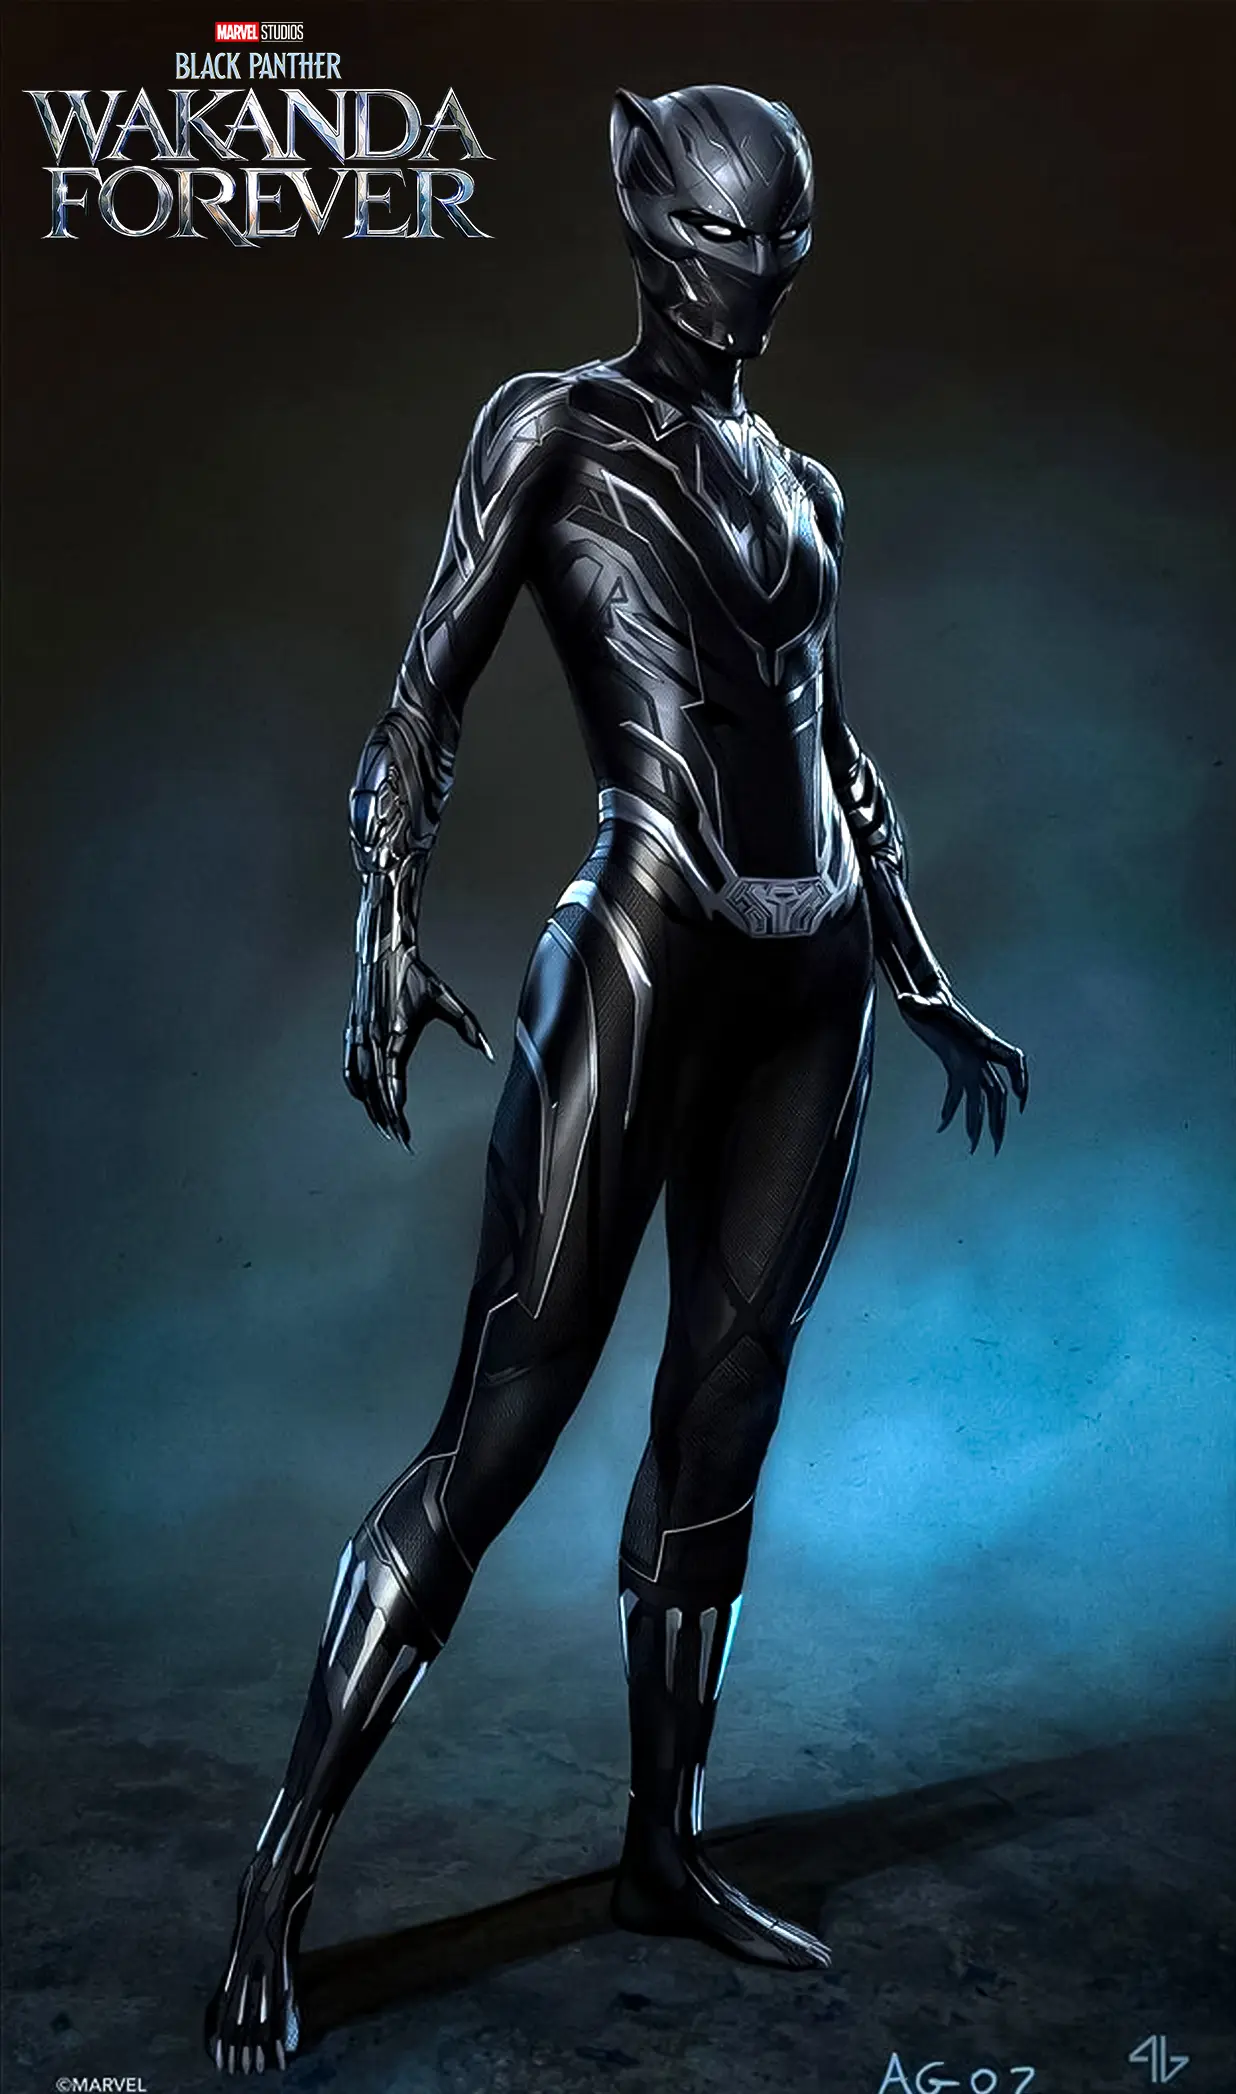 Shuri quase usou uniforme diferente em Pantera Negra 2.